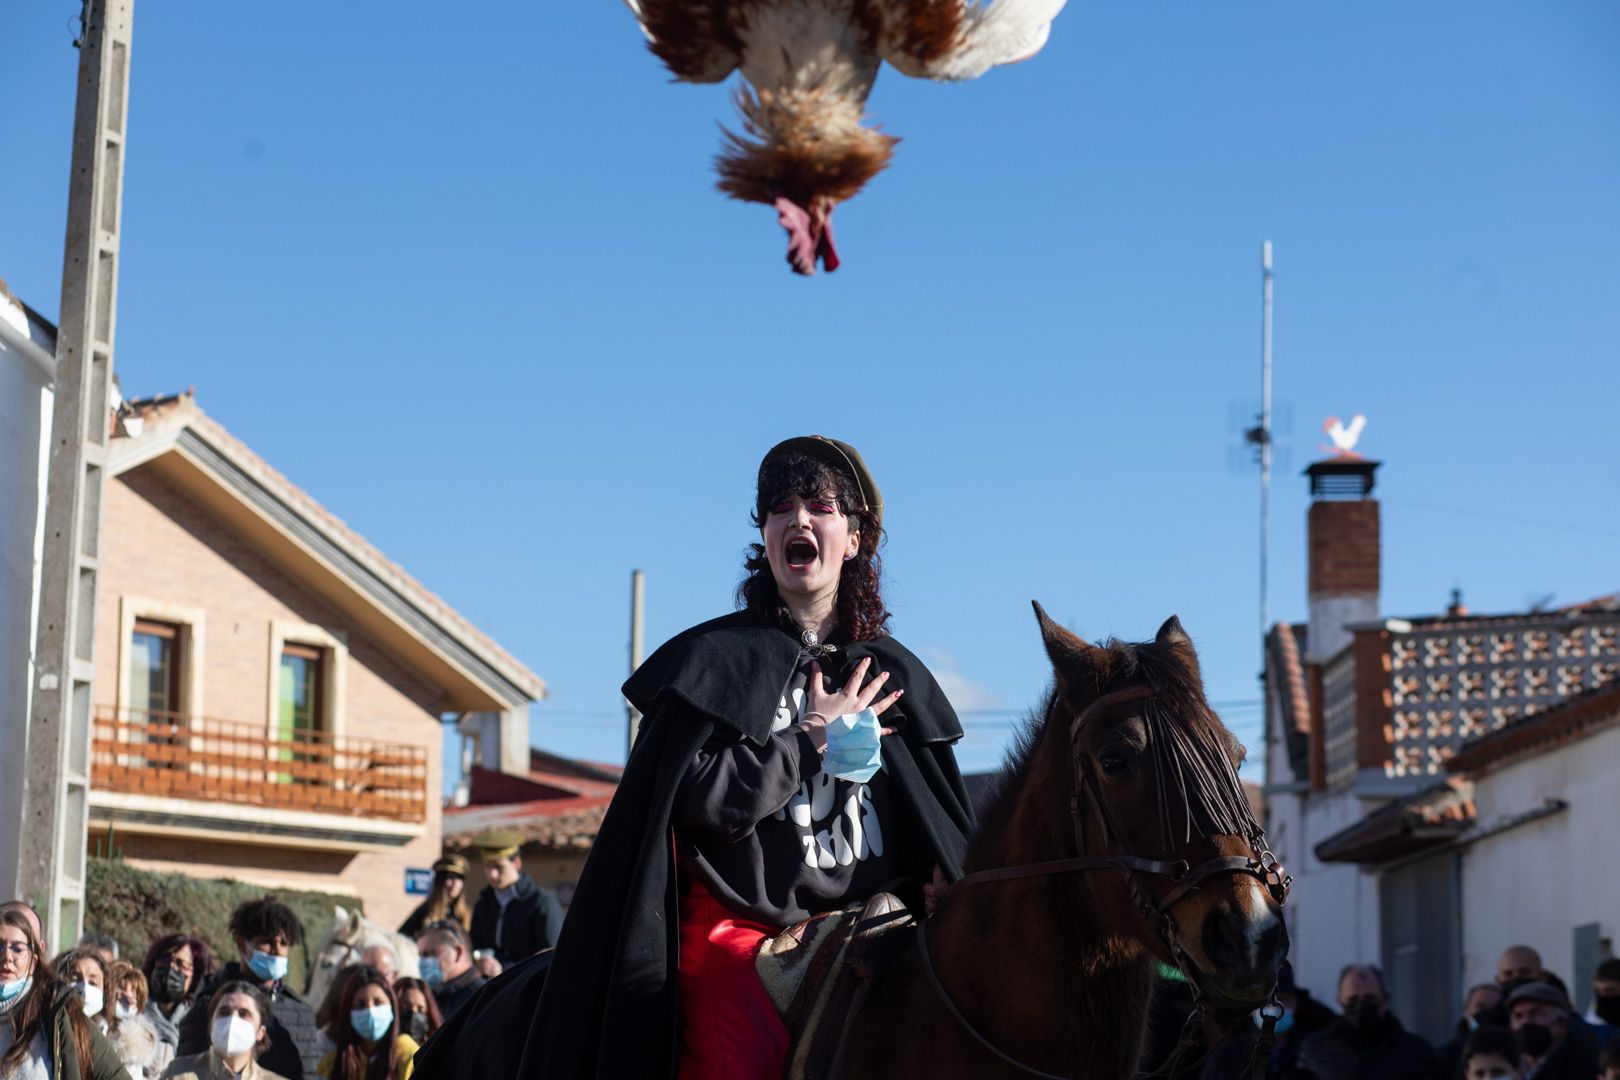 GALERÍA | La Carrera del Gallo del Pego, en imágenes